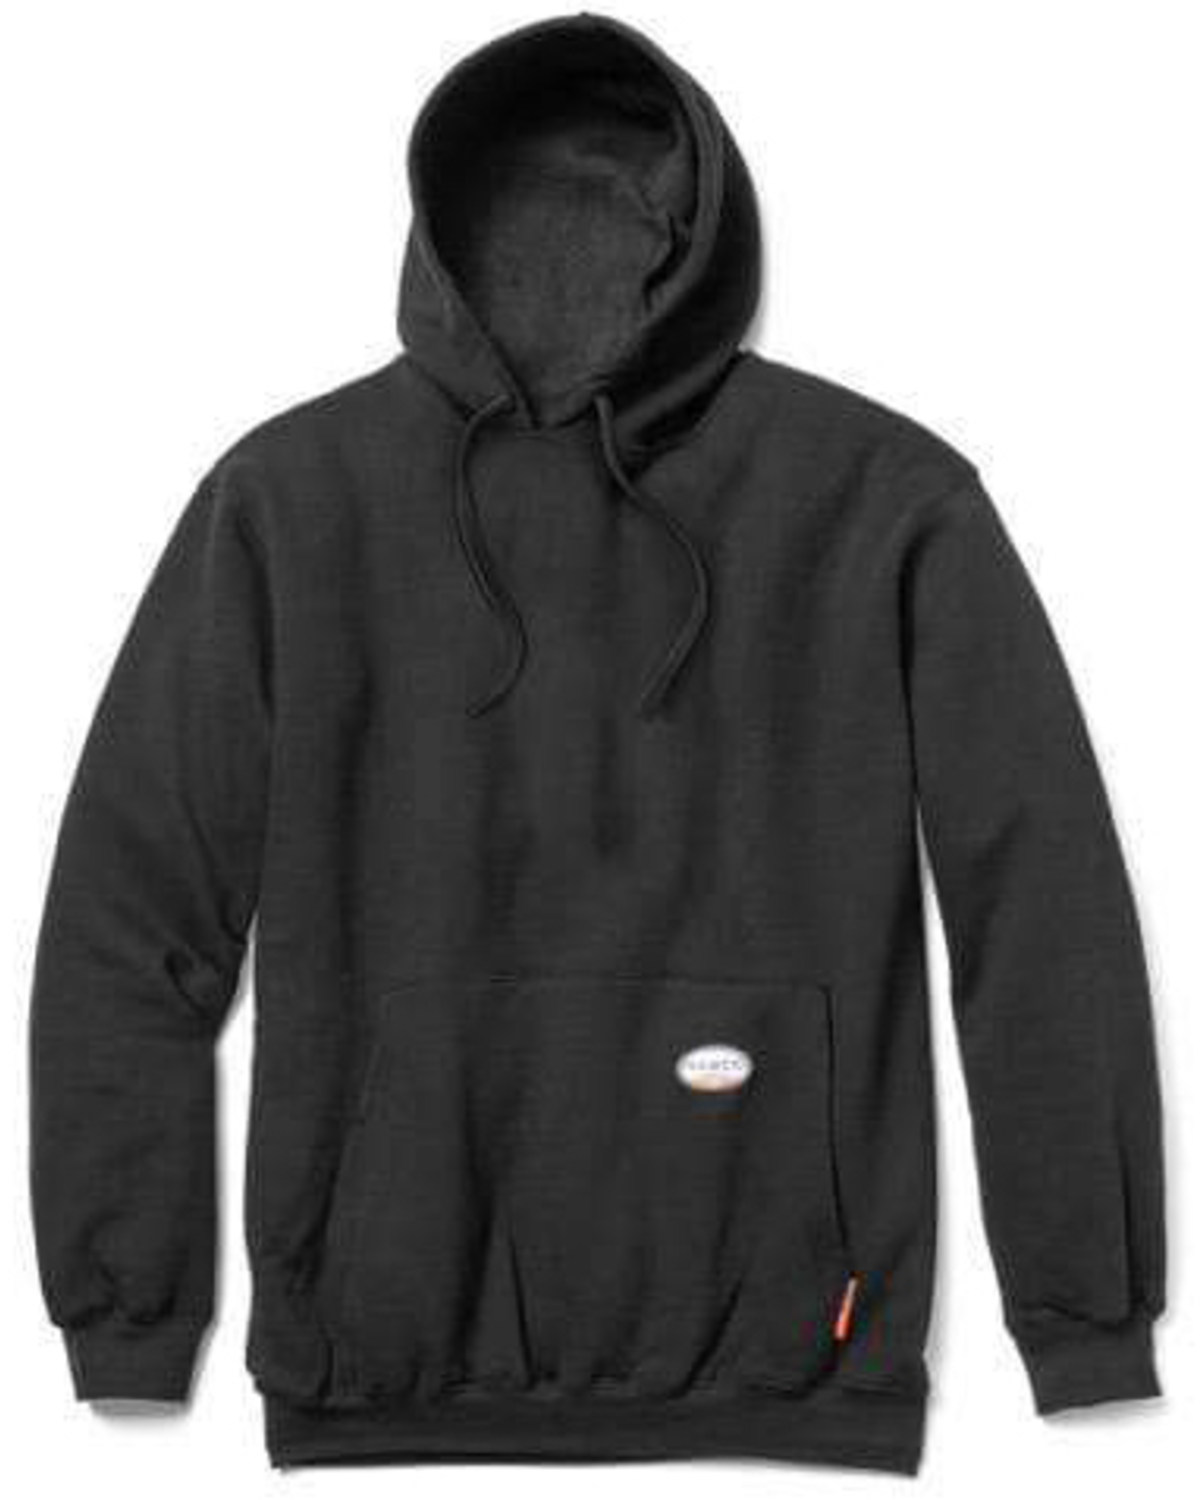 Rasco Men's Flame Resistant Black Hooded Work Sweatshirt